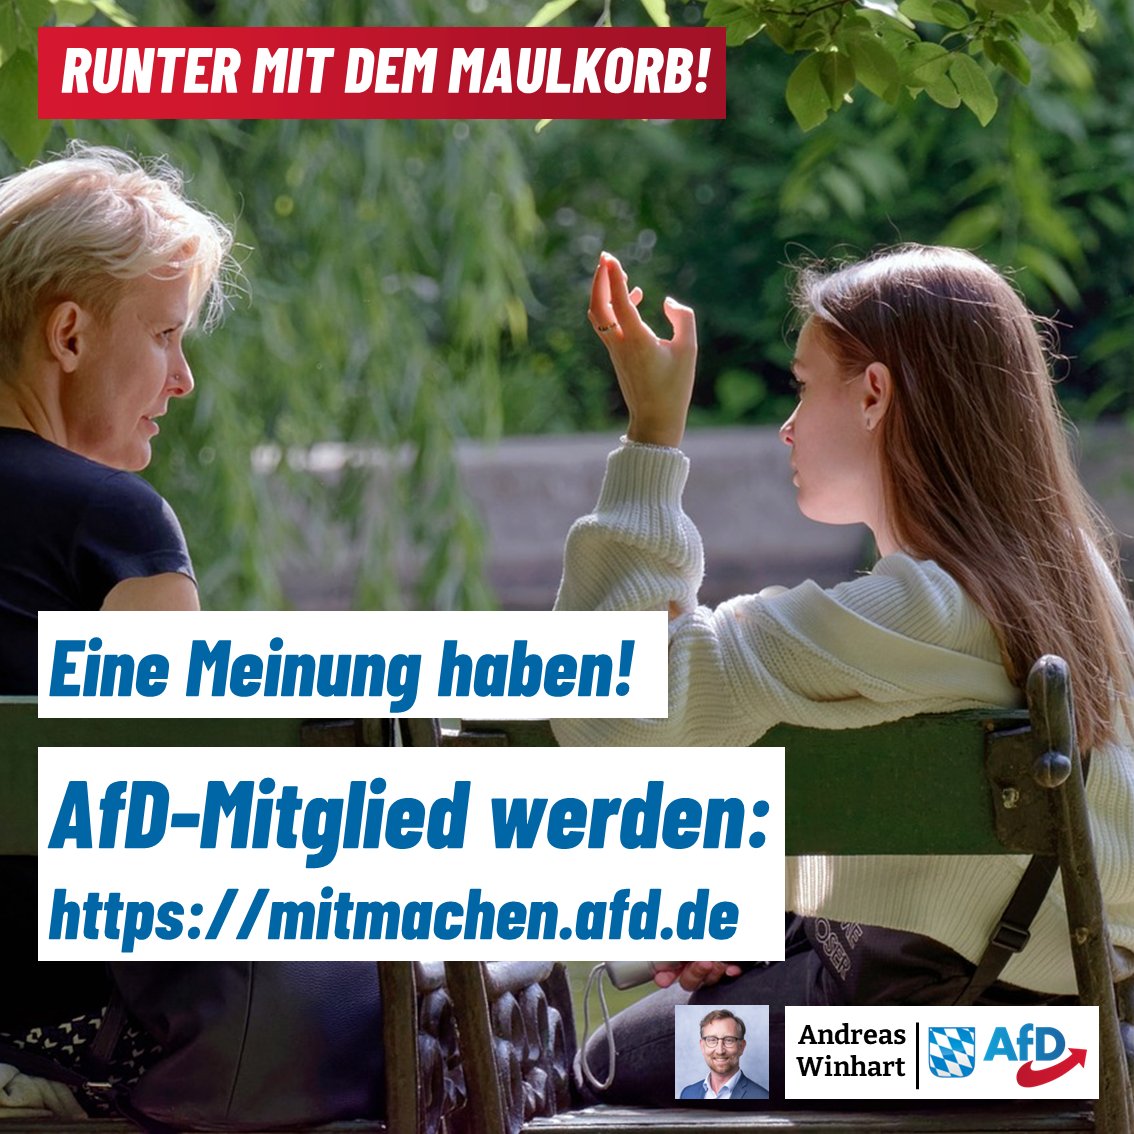 Habt ihr auch genug von der ständigen Bevormundung in #Ampel-Deutschland? Dann kommt zu uns! 
#AfD #Meinungsfreiheit 

Hier geht's zum Aufnahmeantrag:
⏬⏬
mitmachen.afd.de